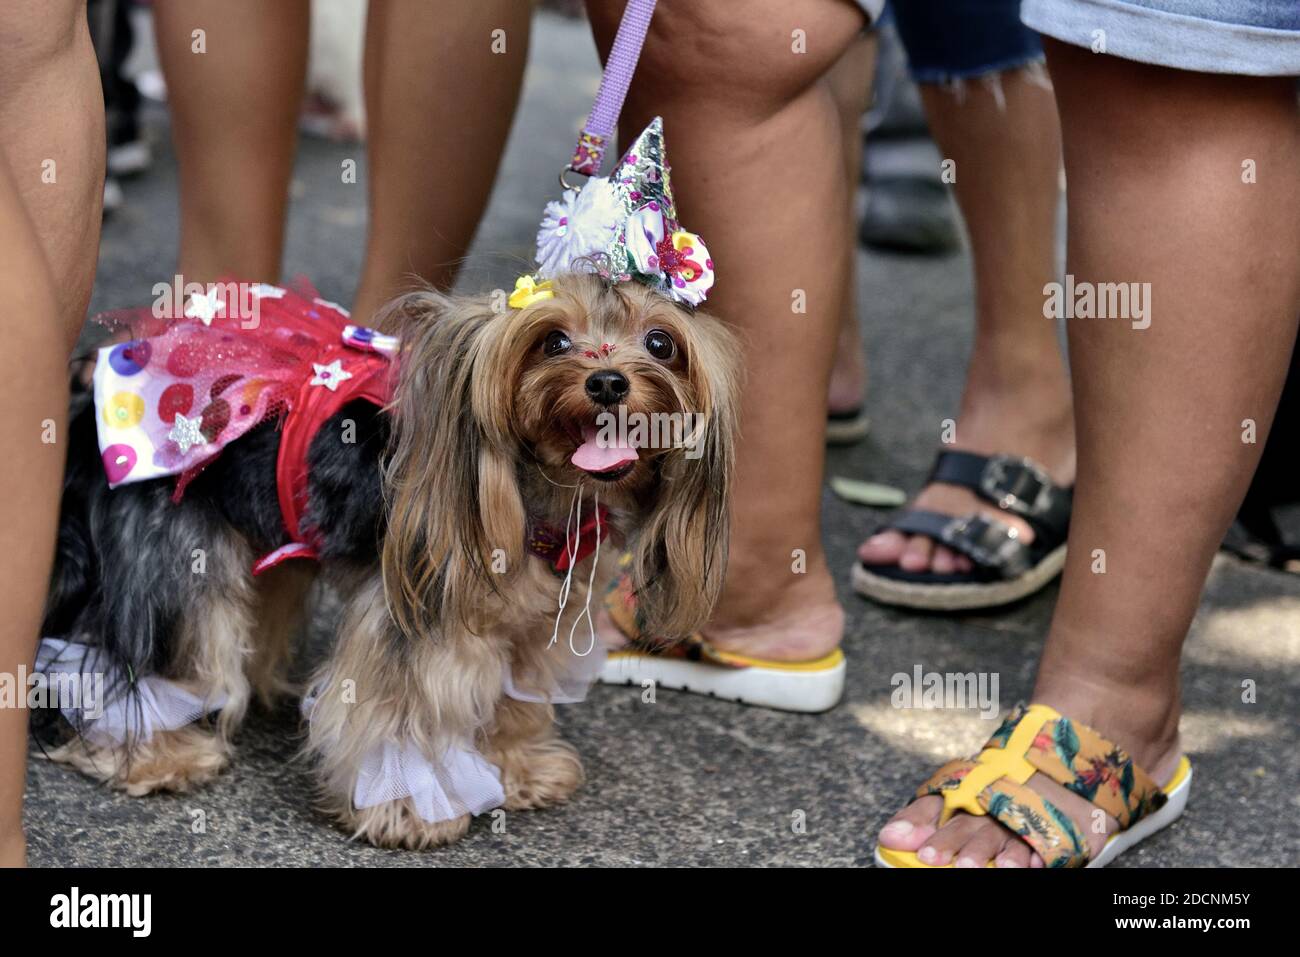 Americhe, Brasile – 15 febbraio 2020: Un cane vestito da fantasia partecipa alla festa del carnevale a Tijuca, nella zona Nord di Rio de Janeiro. Foto Stock